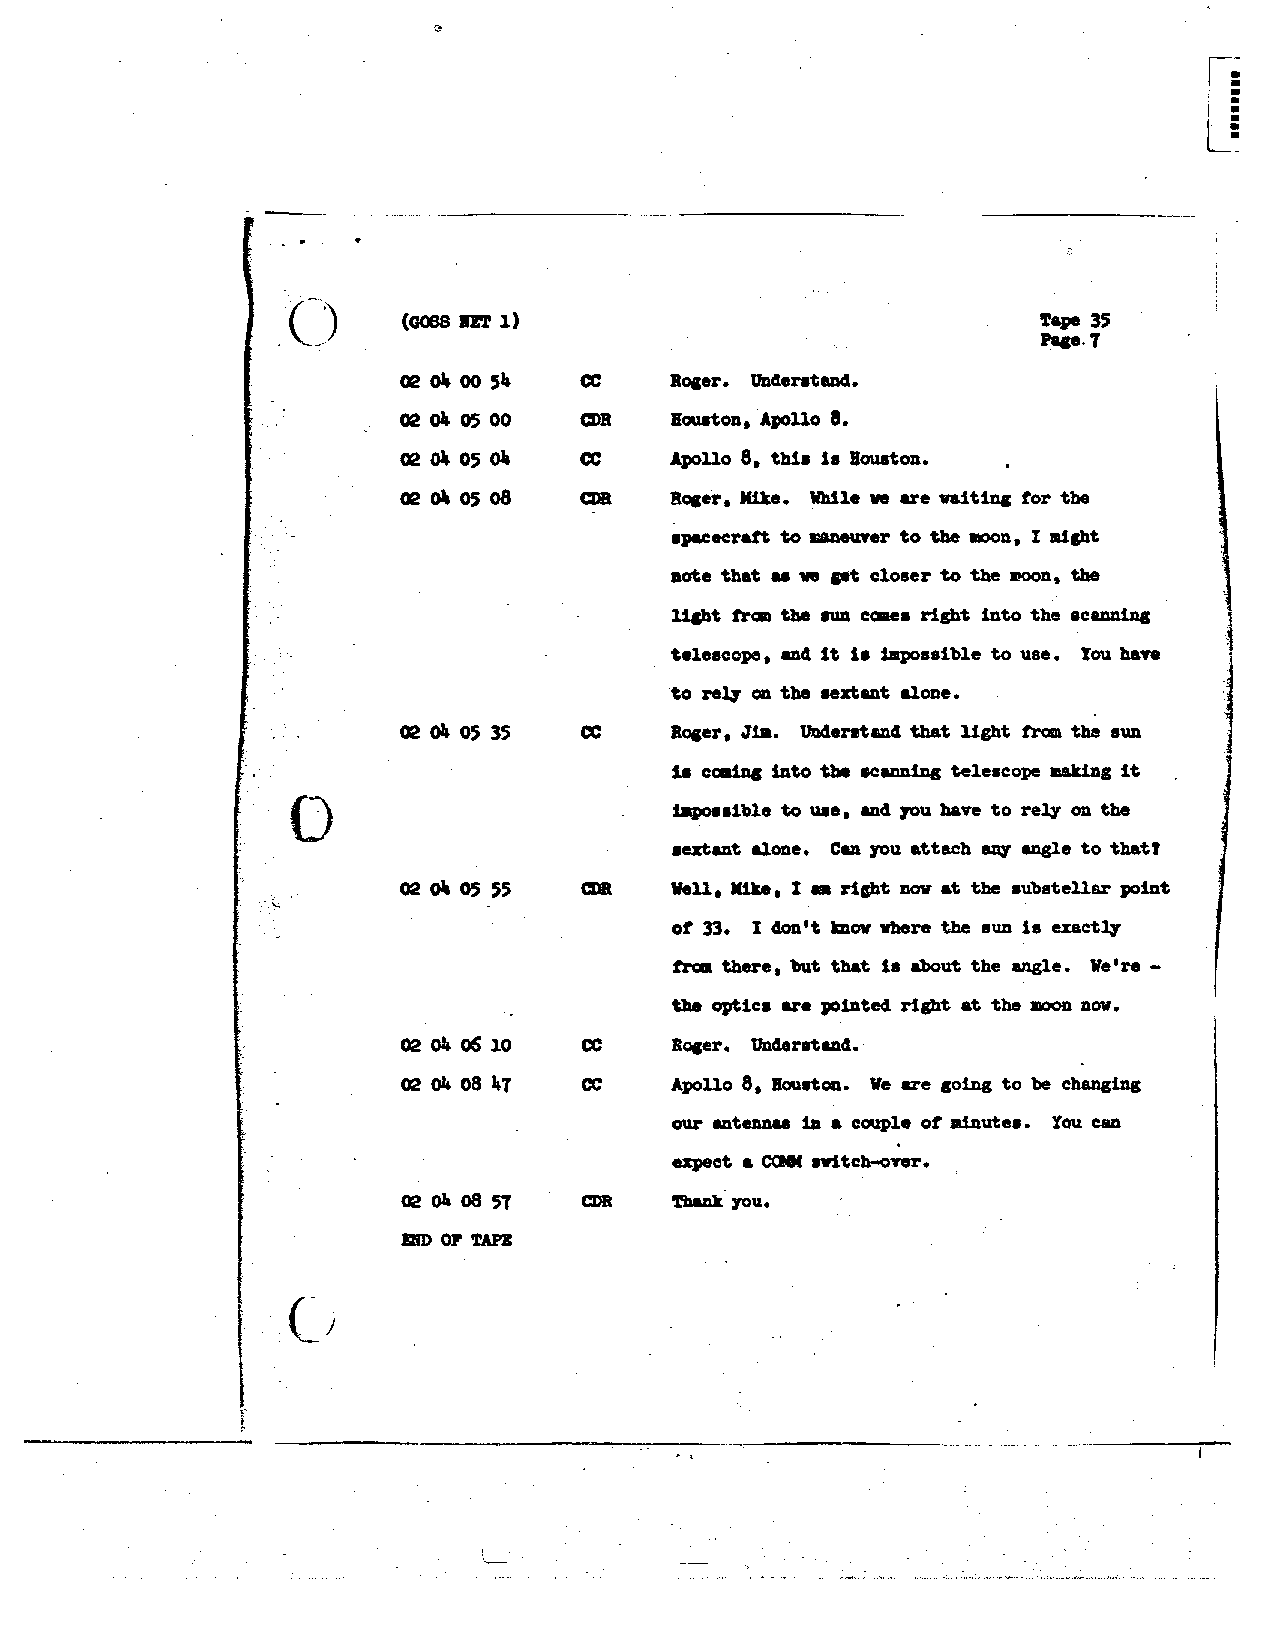 Page 270 of Apollo 8’s original transcript